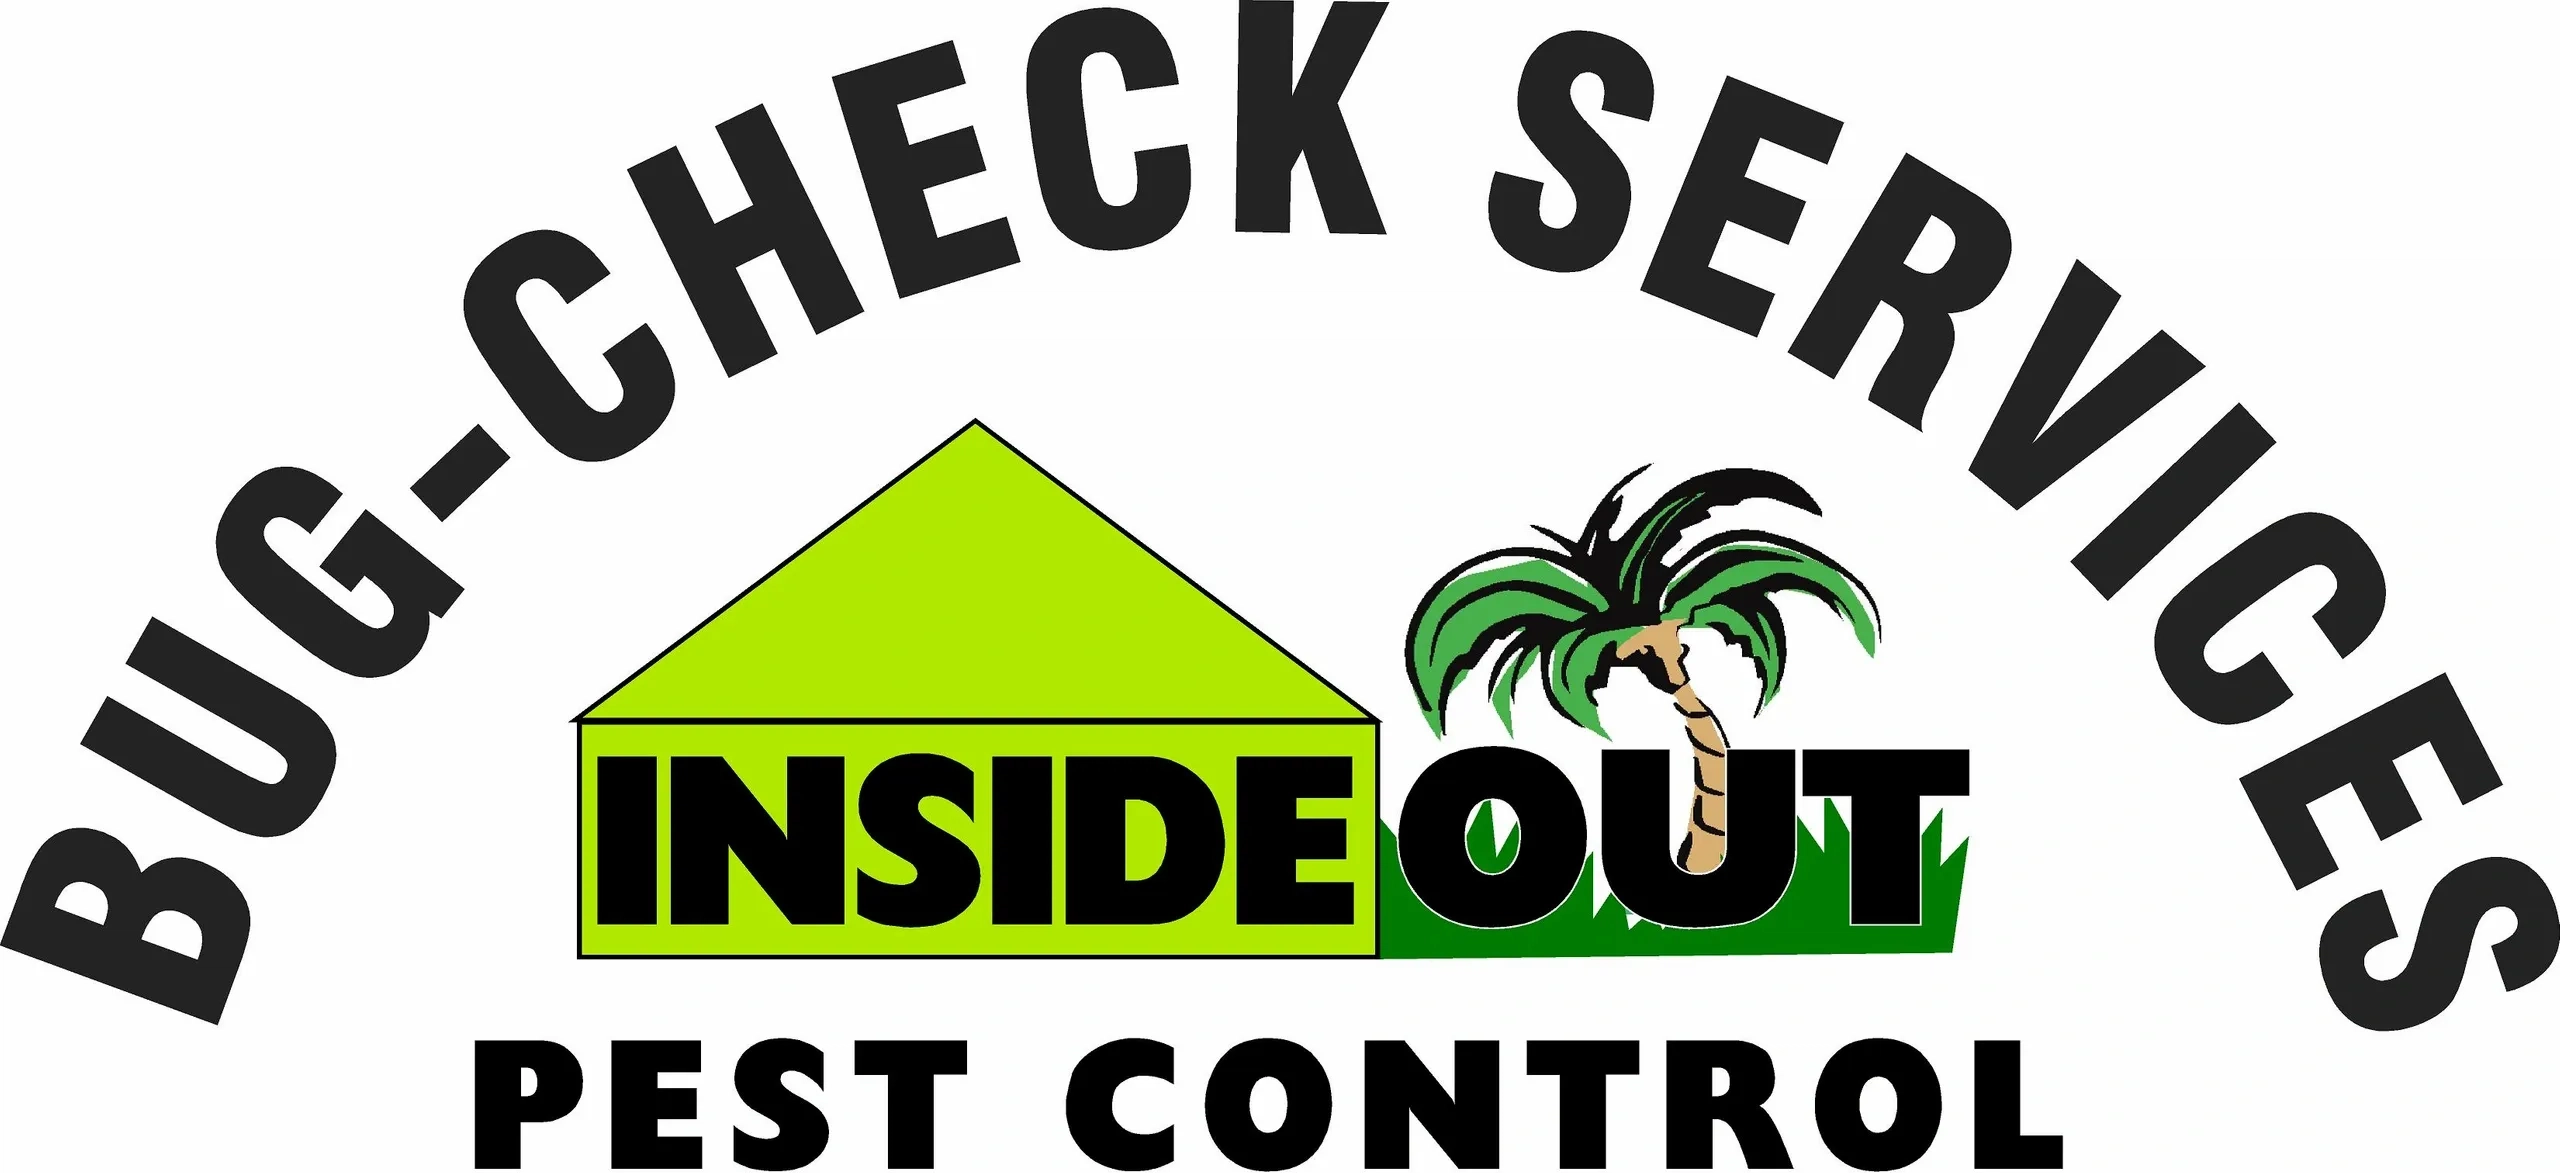 Bug Check Services Inc Logo